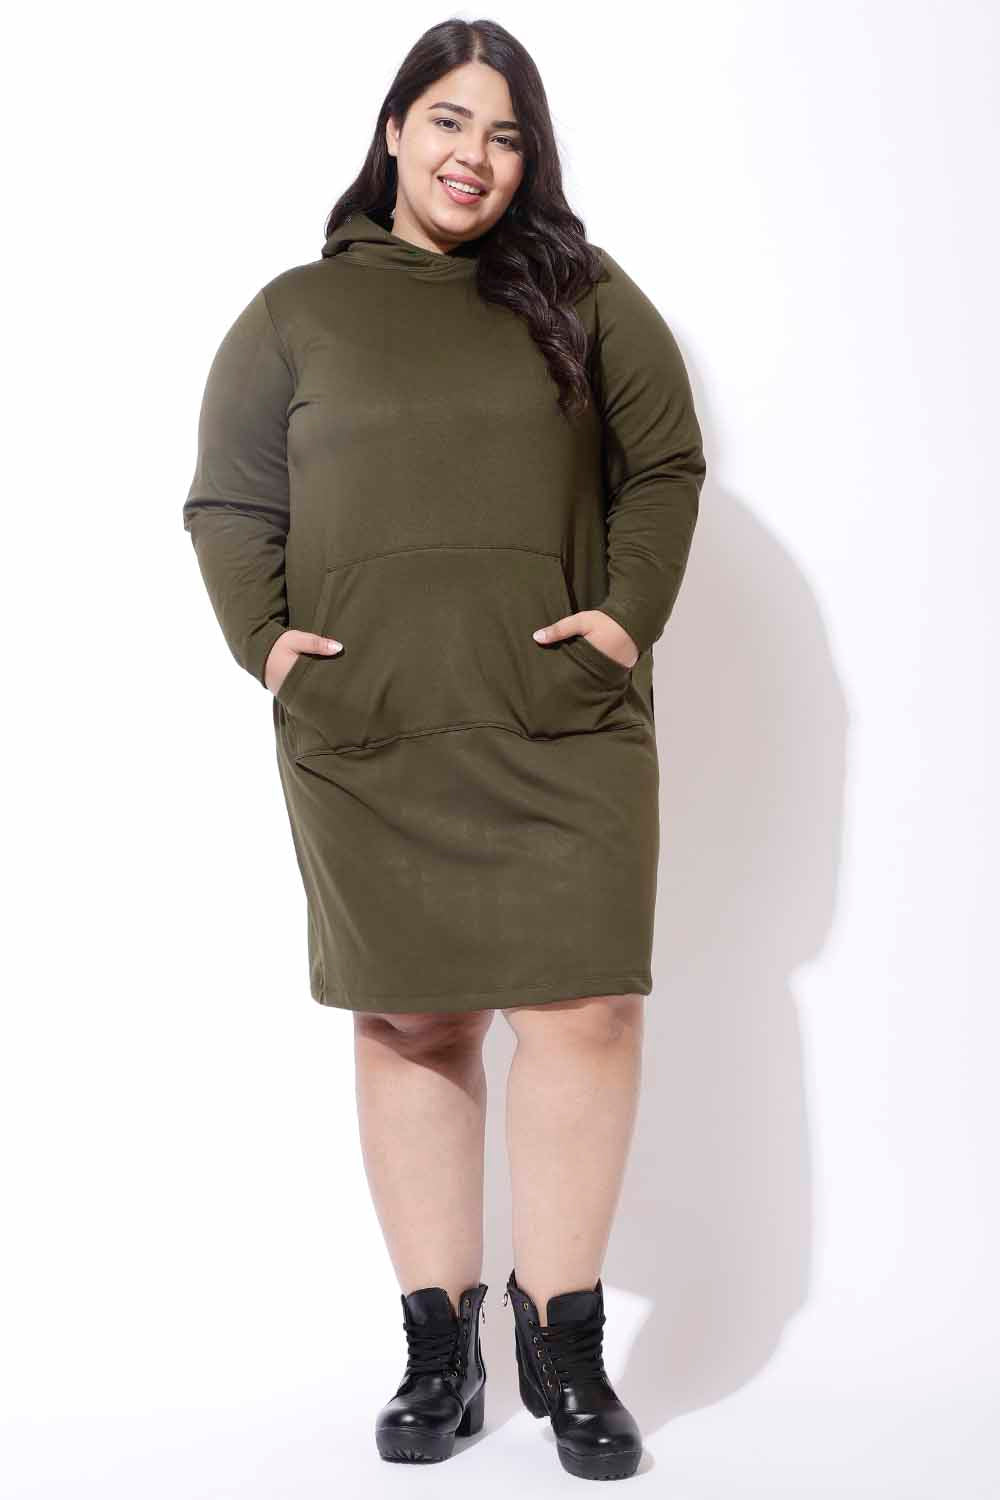 Plus Size Olive Sweatshirt Hoodie Winter Dress for Women